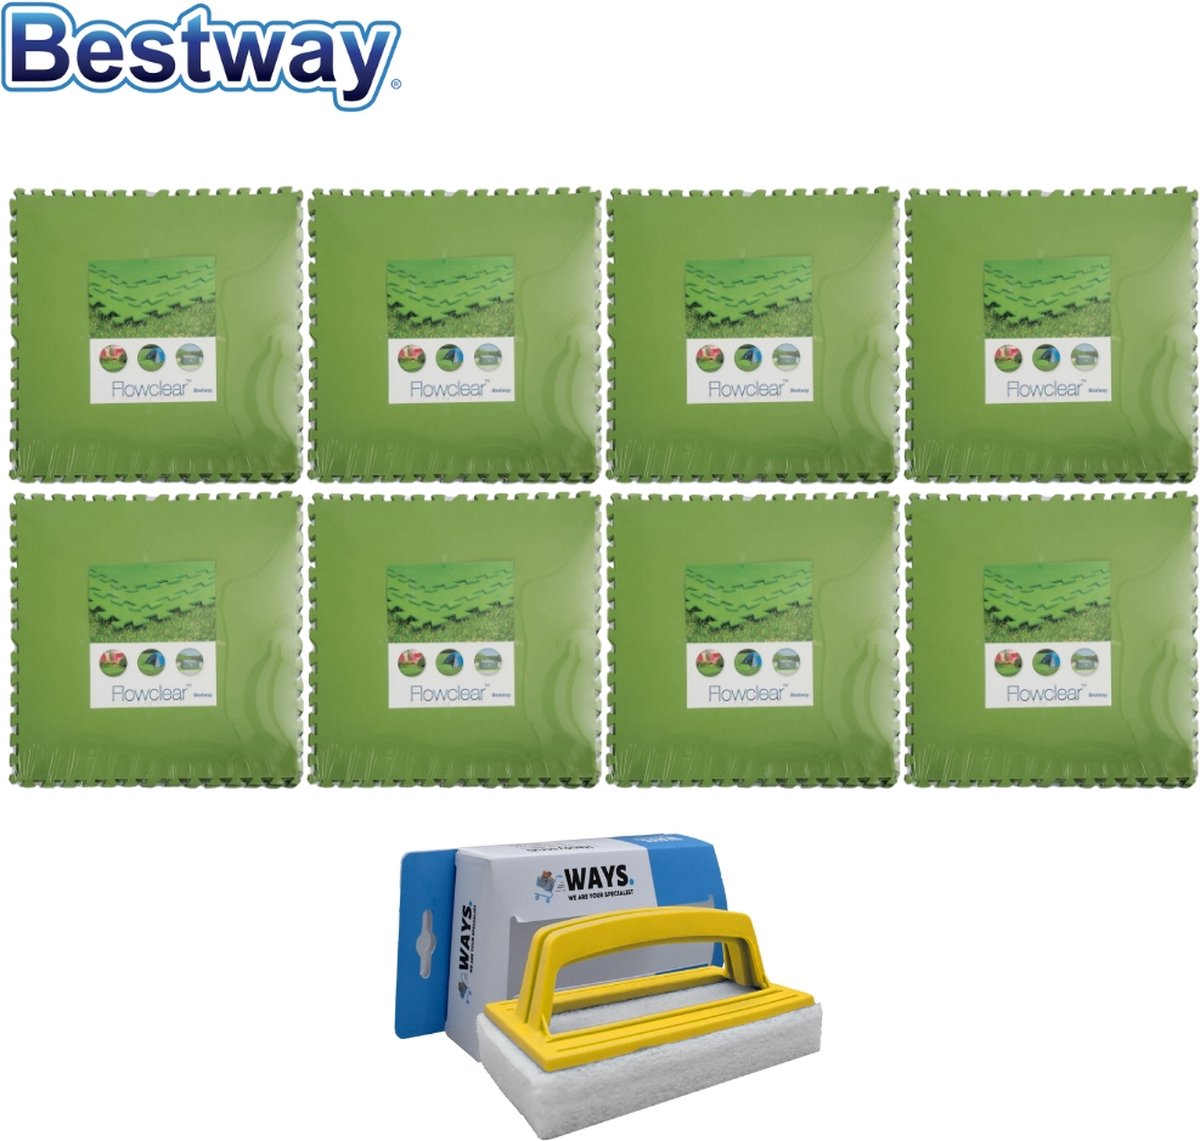 Bestway Flowclear - Voordeelverpakking - Grondtegels - 8 Verpakkingen Van 9 Stuks & Ways Scrubborstel